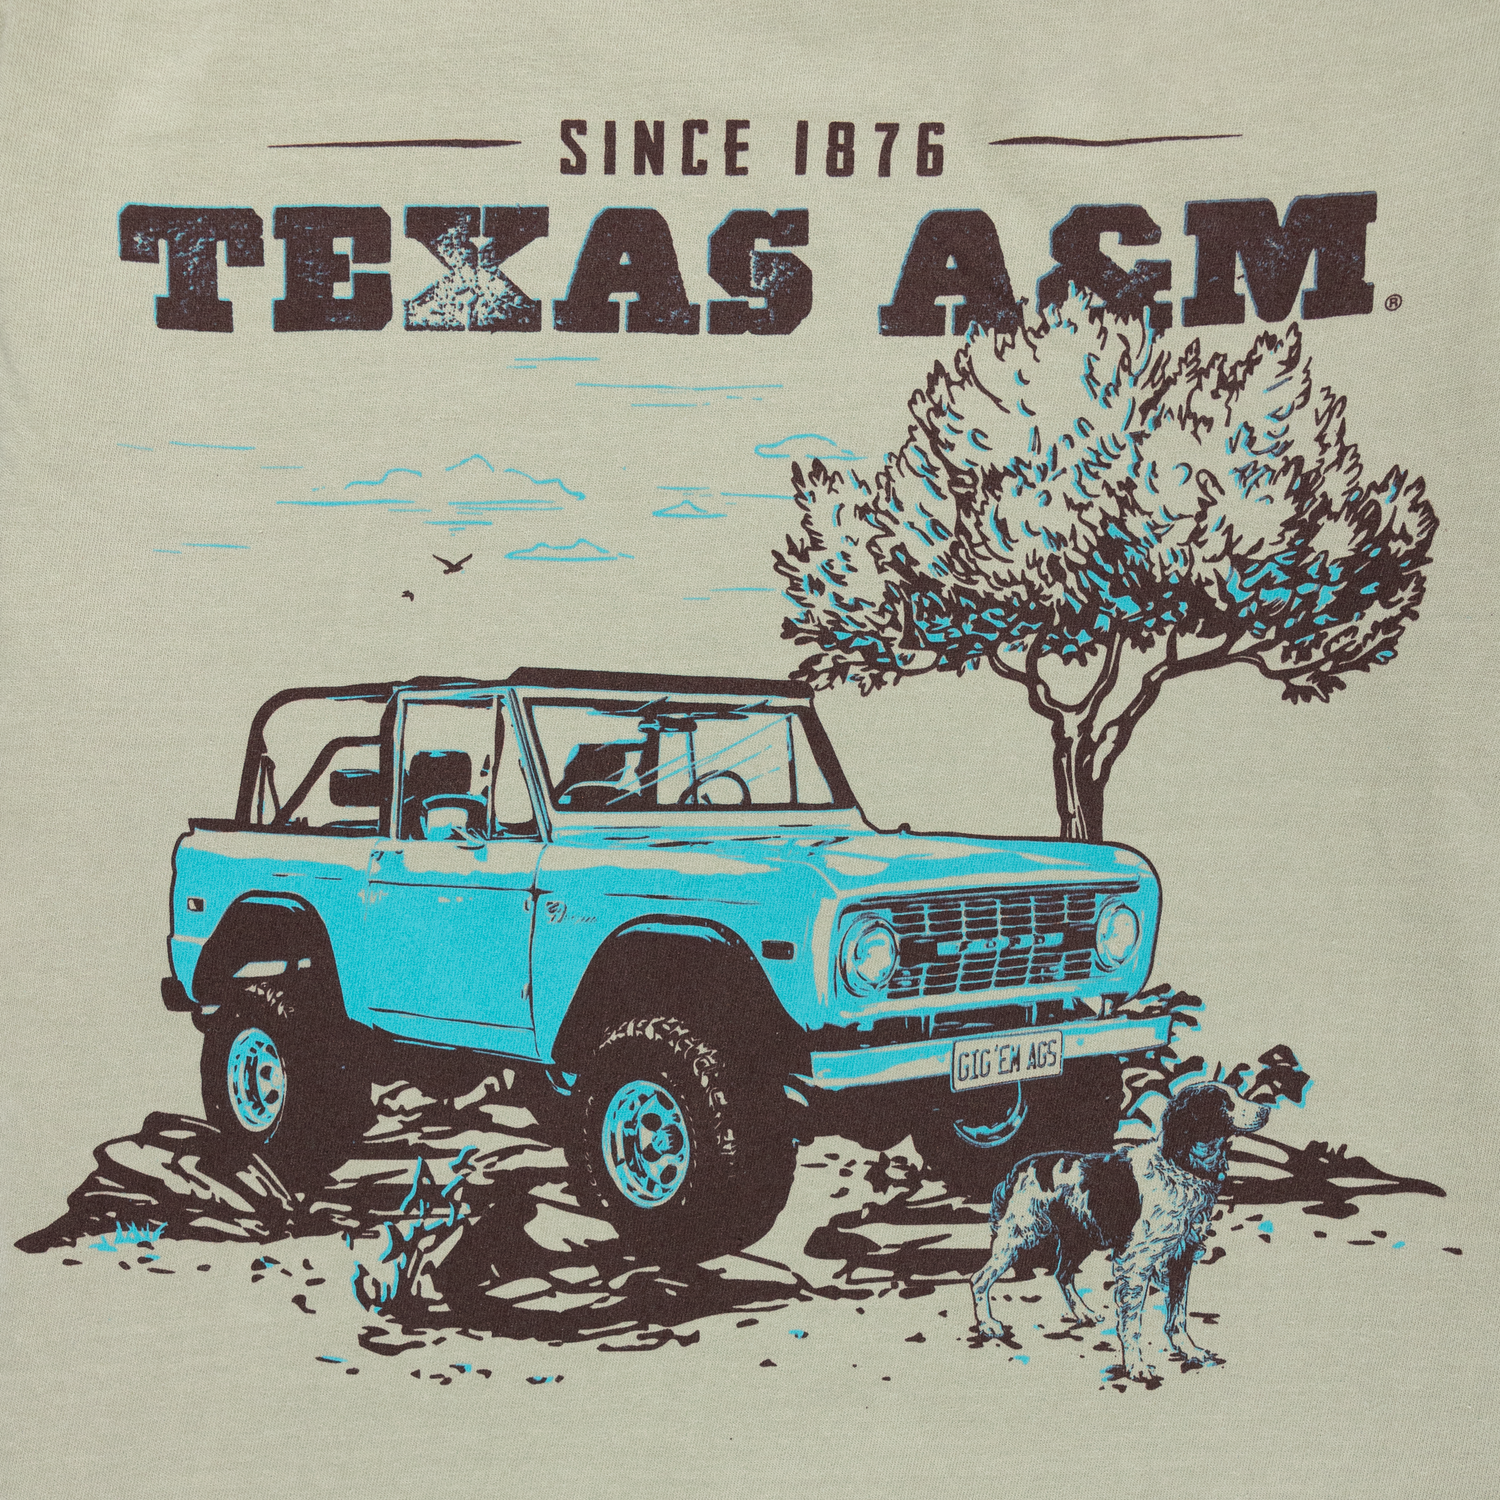 Texas A&M Aggie University Gig'em Aggies 1876 retro logo shirt